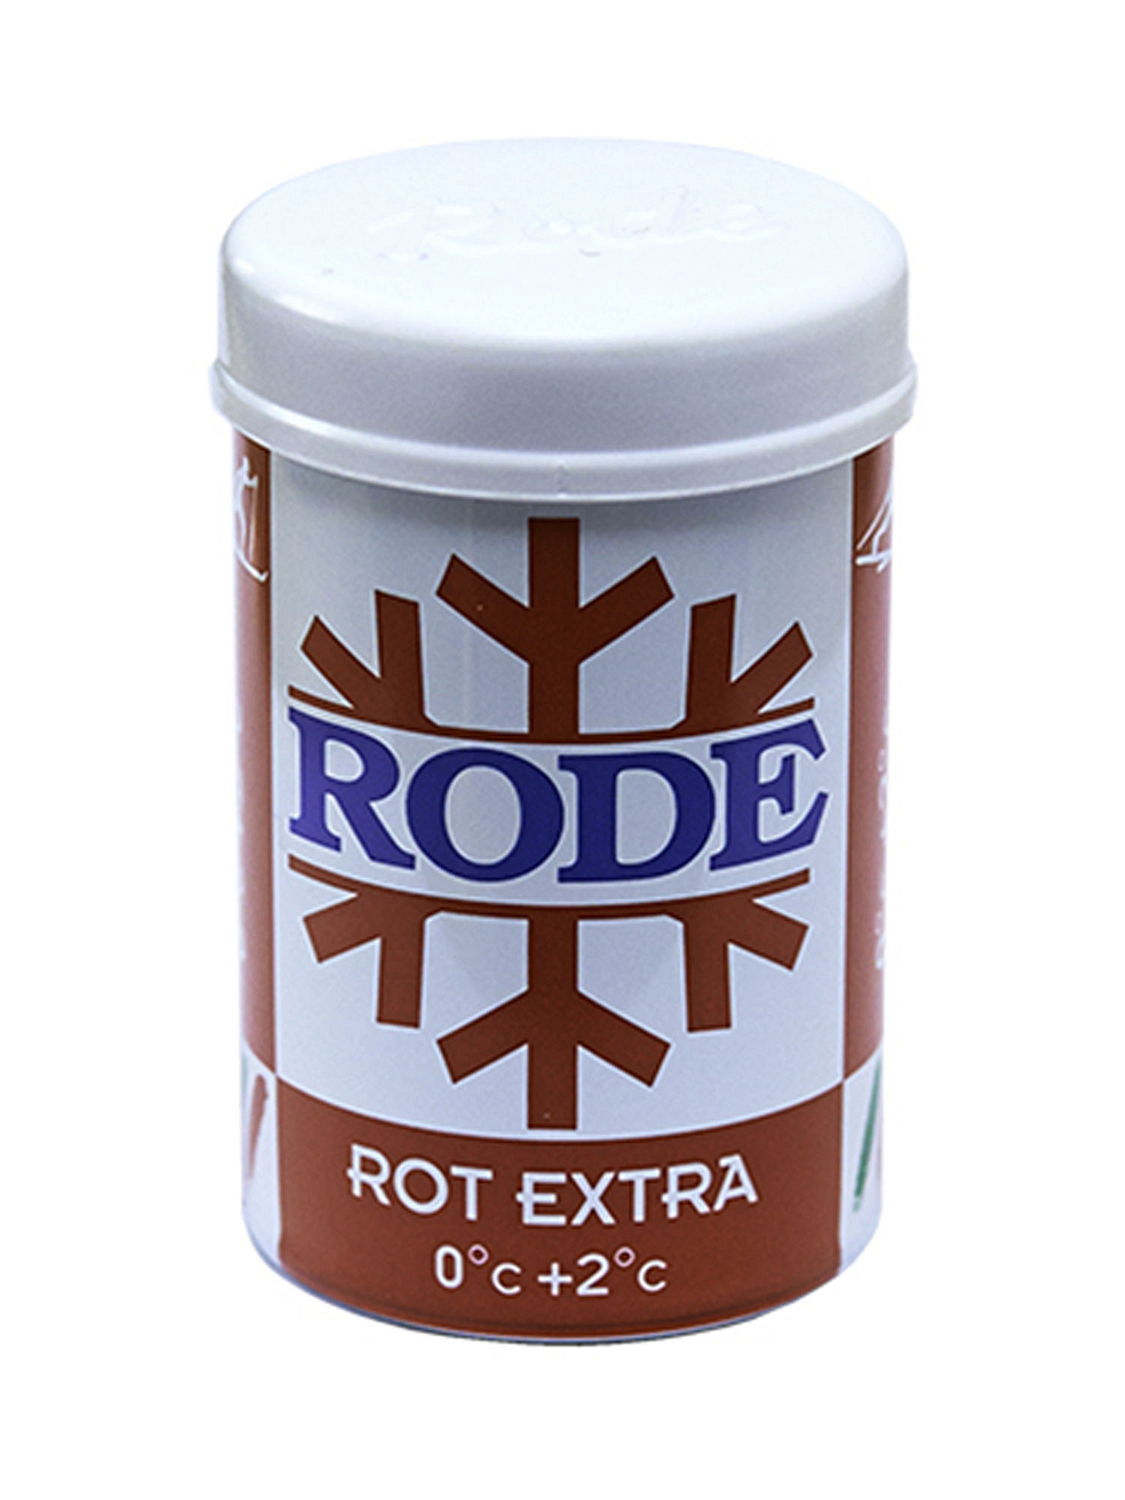 Безфтористая мазь держания твердая RODE Stick Rot Extra 0C°... +2C°